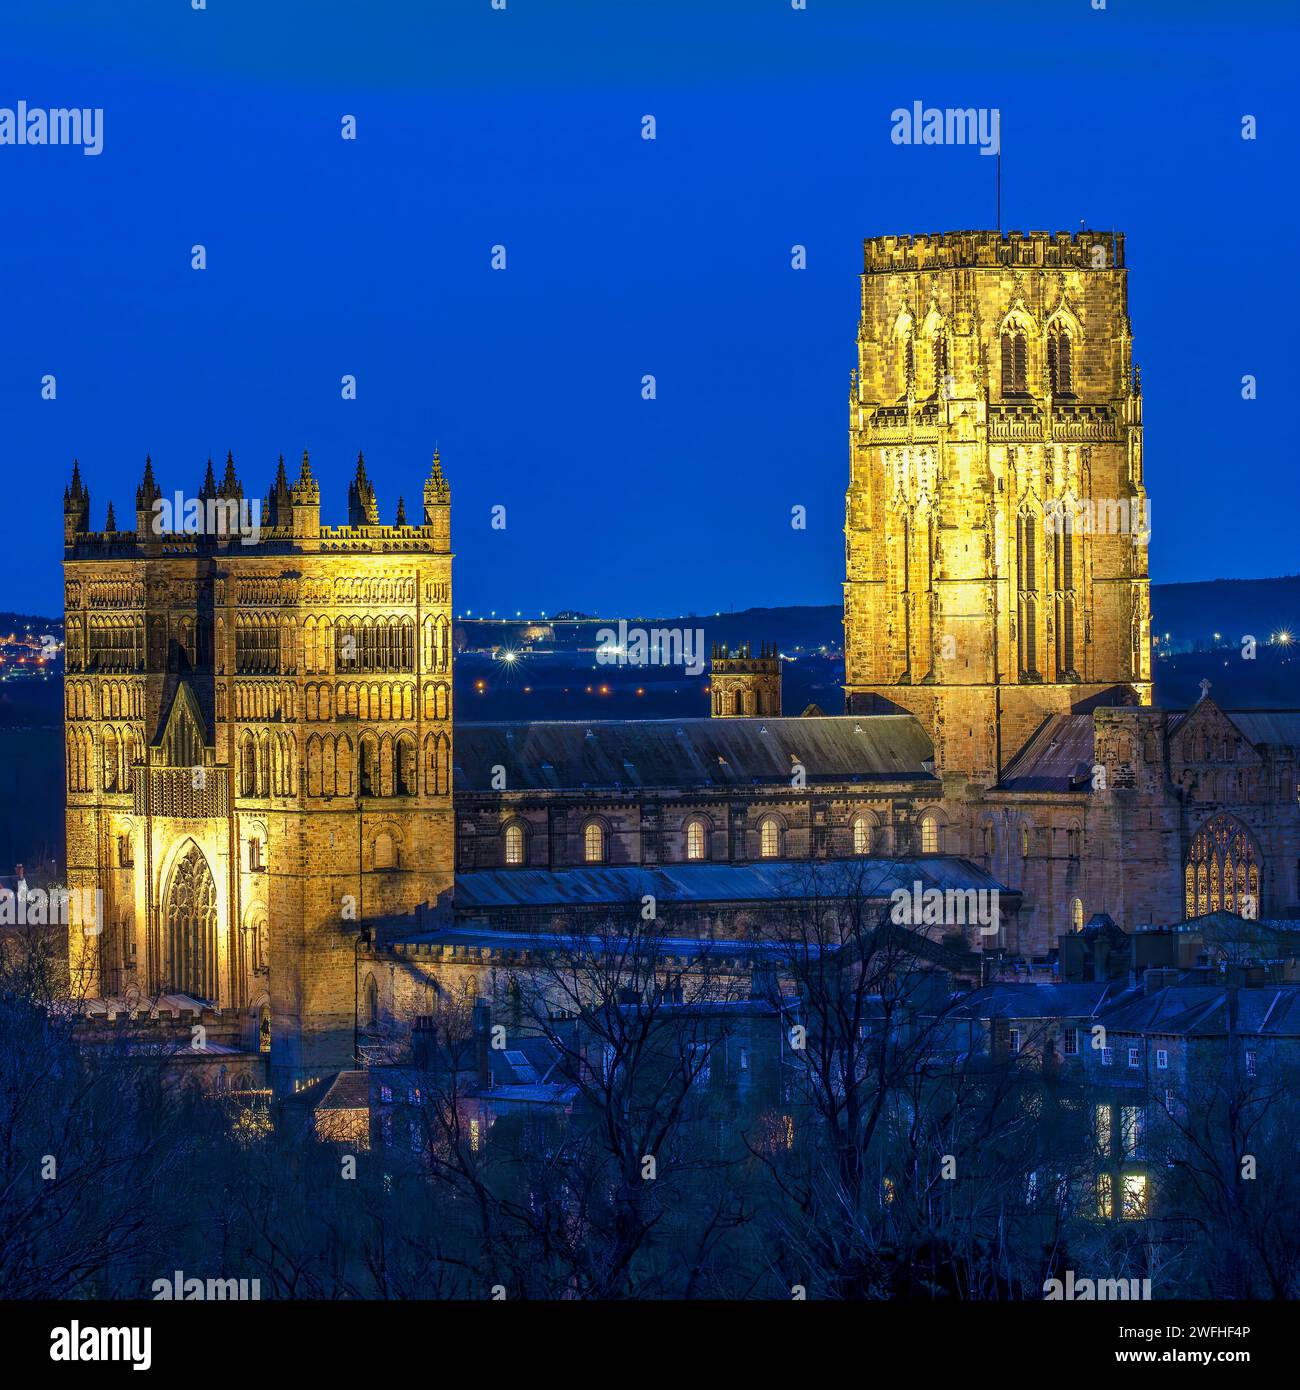 Une vue de la cathédrale de Durham dans la ville de Durham illuminée au crépuscule vu de loin avec un ciel clair Banque D'Images